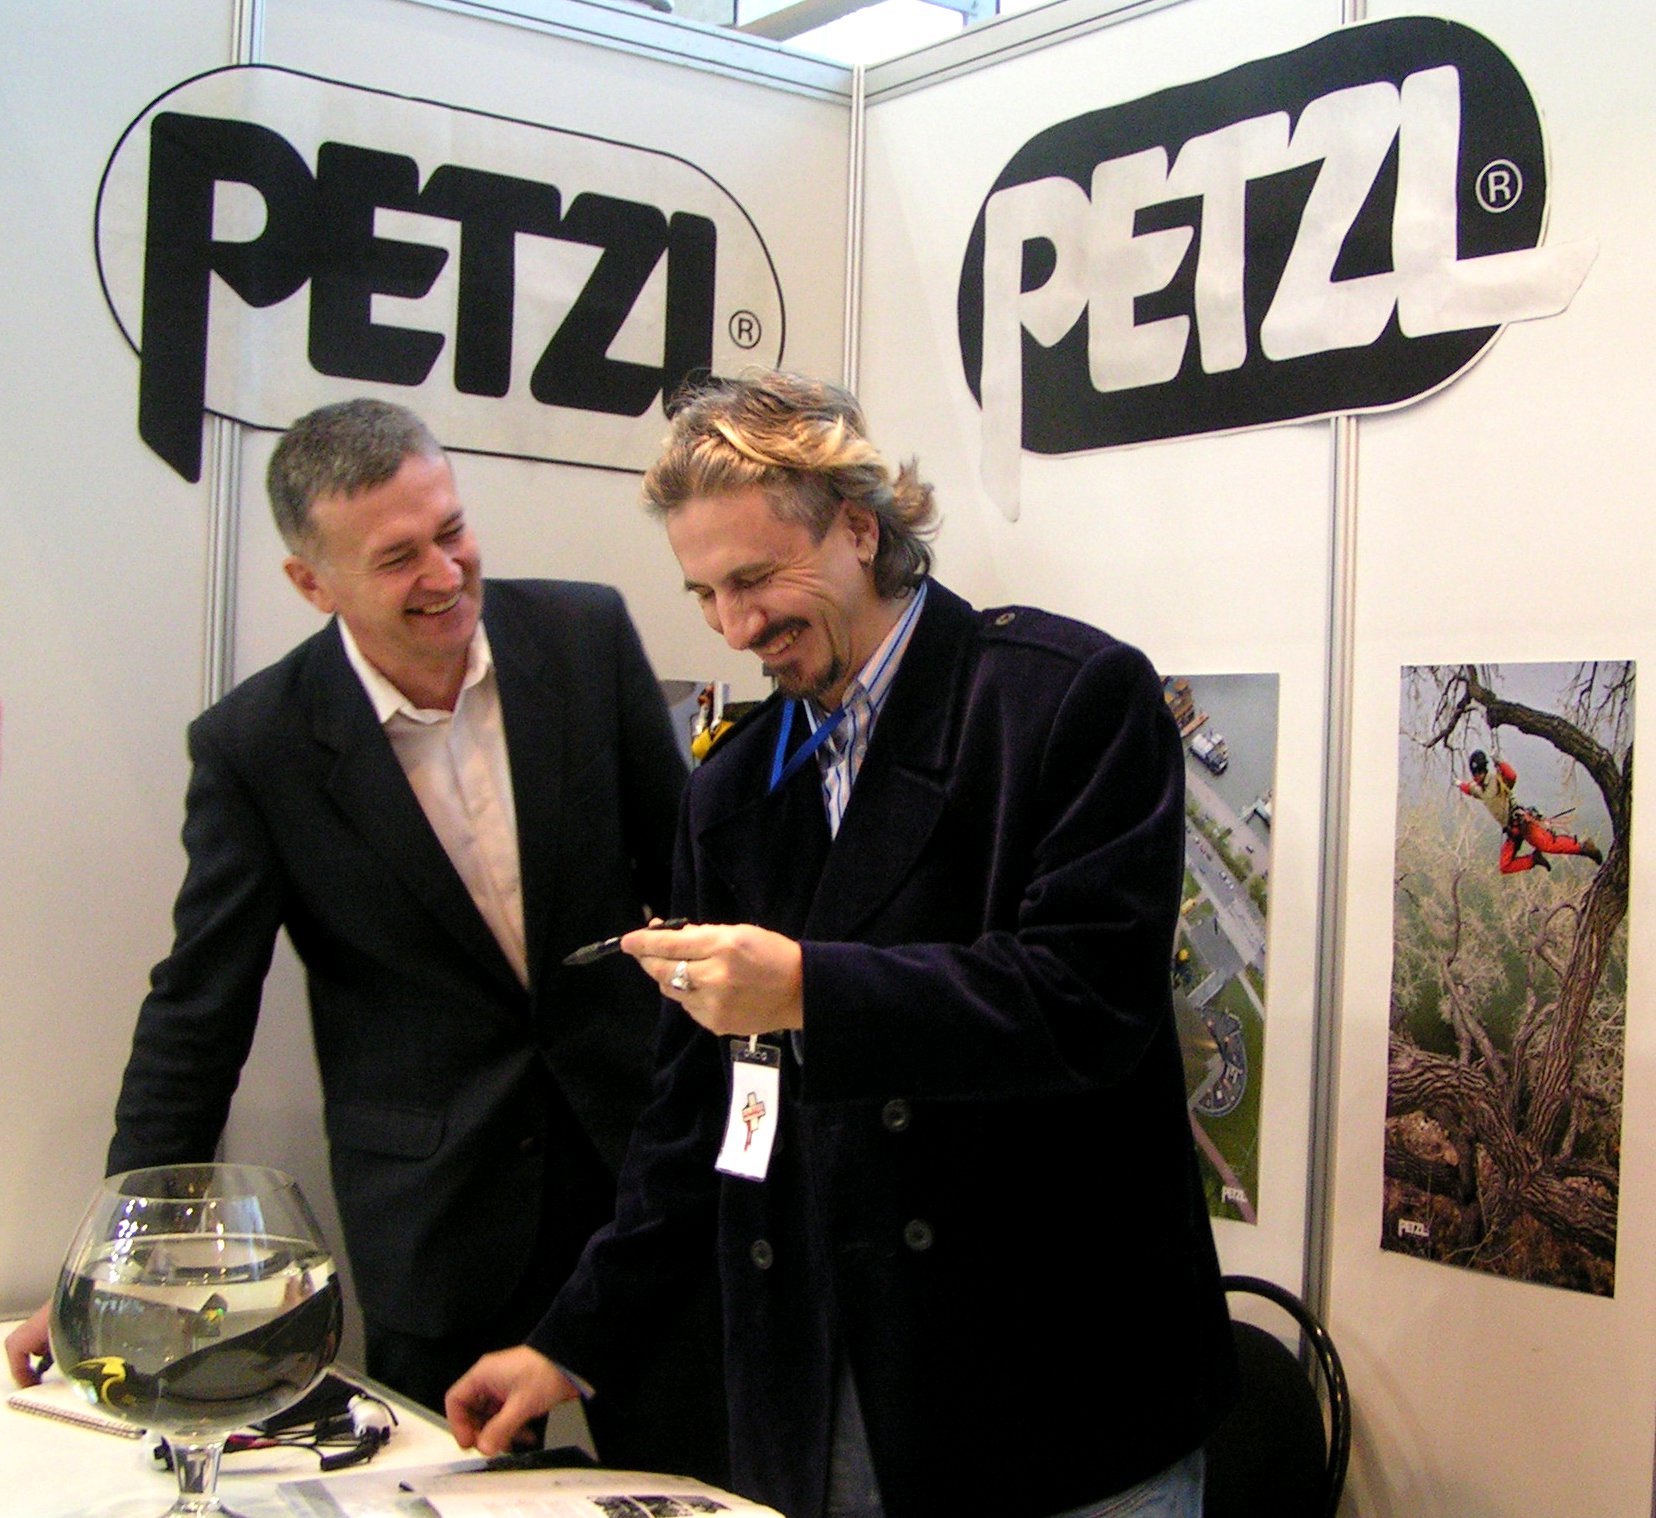 Petzl на выставке БИОТ 2011